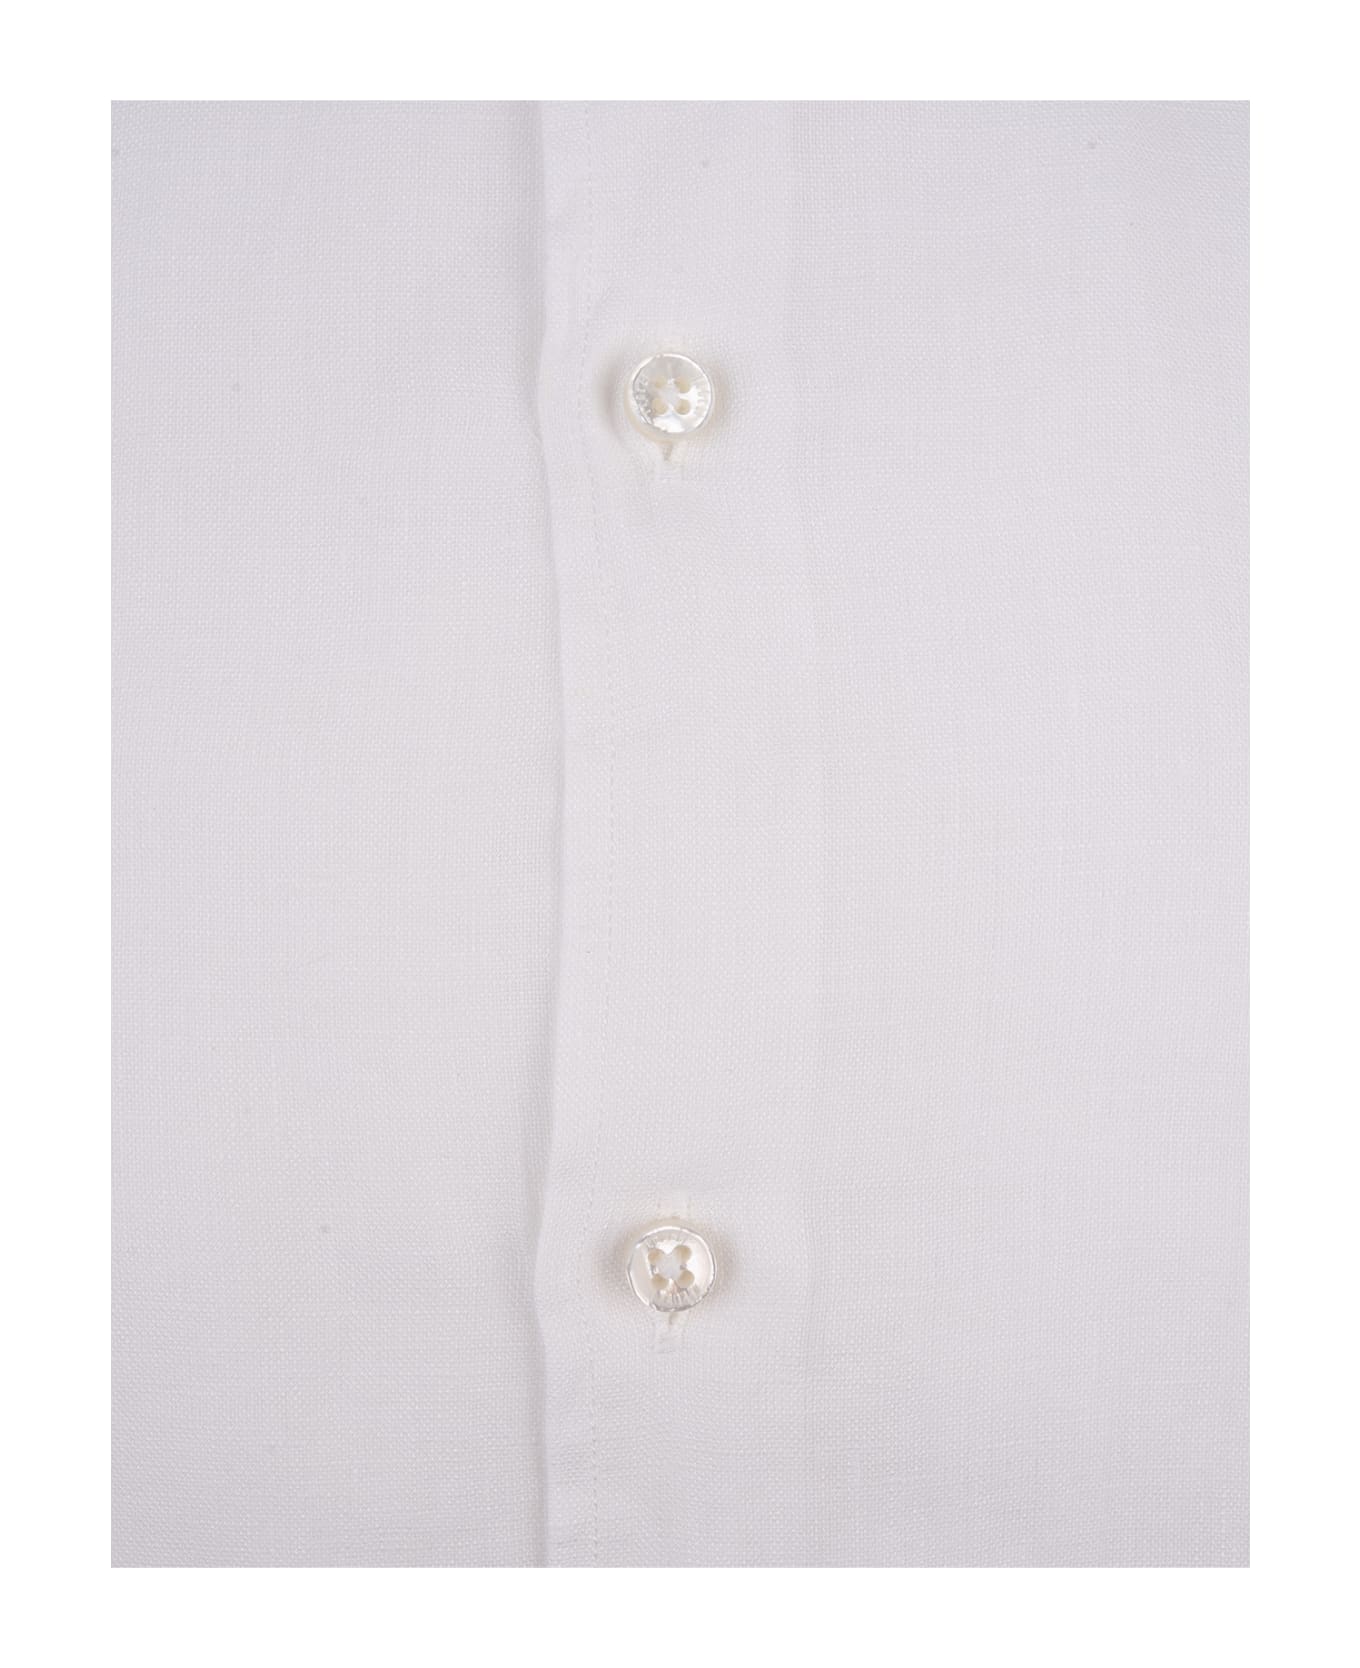 Fedeli White Linen Classic Shirt - White シャツ